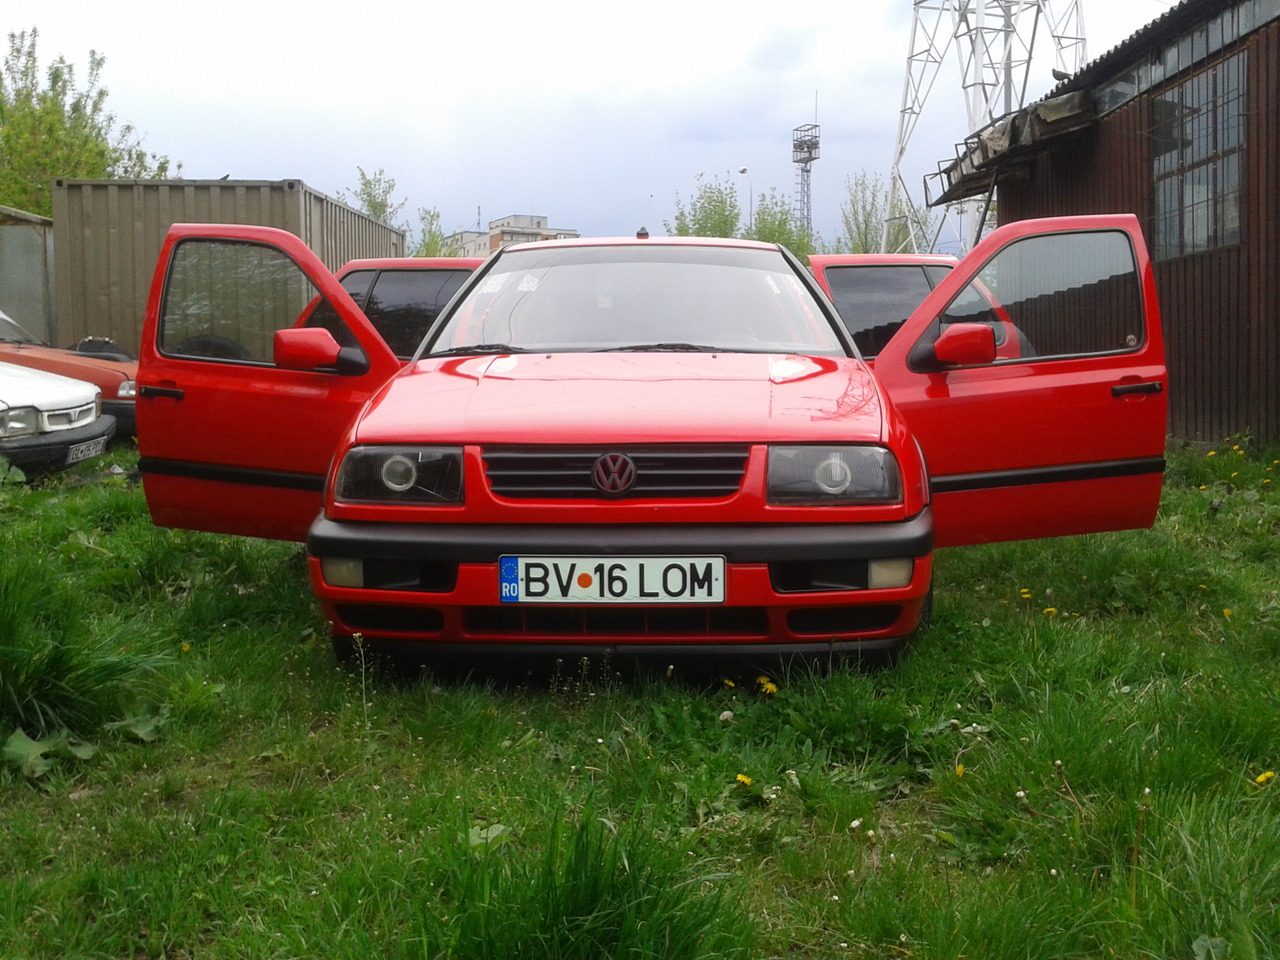 VW Vento 1.6 1993 #1388749